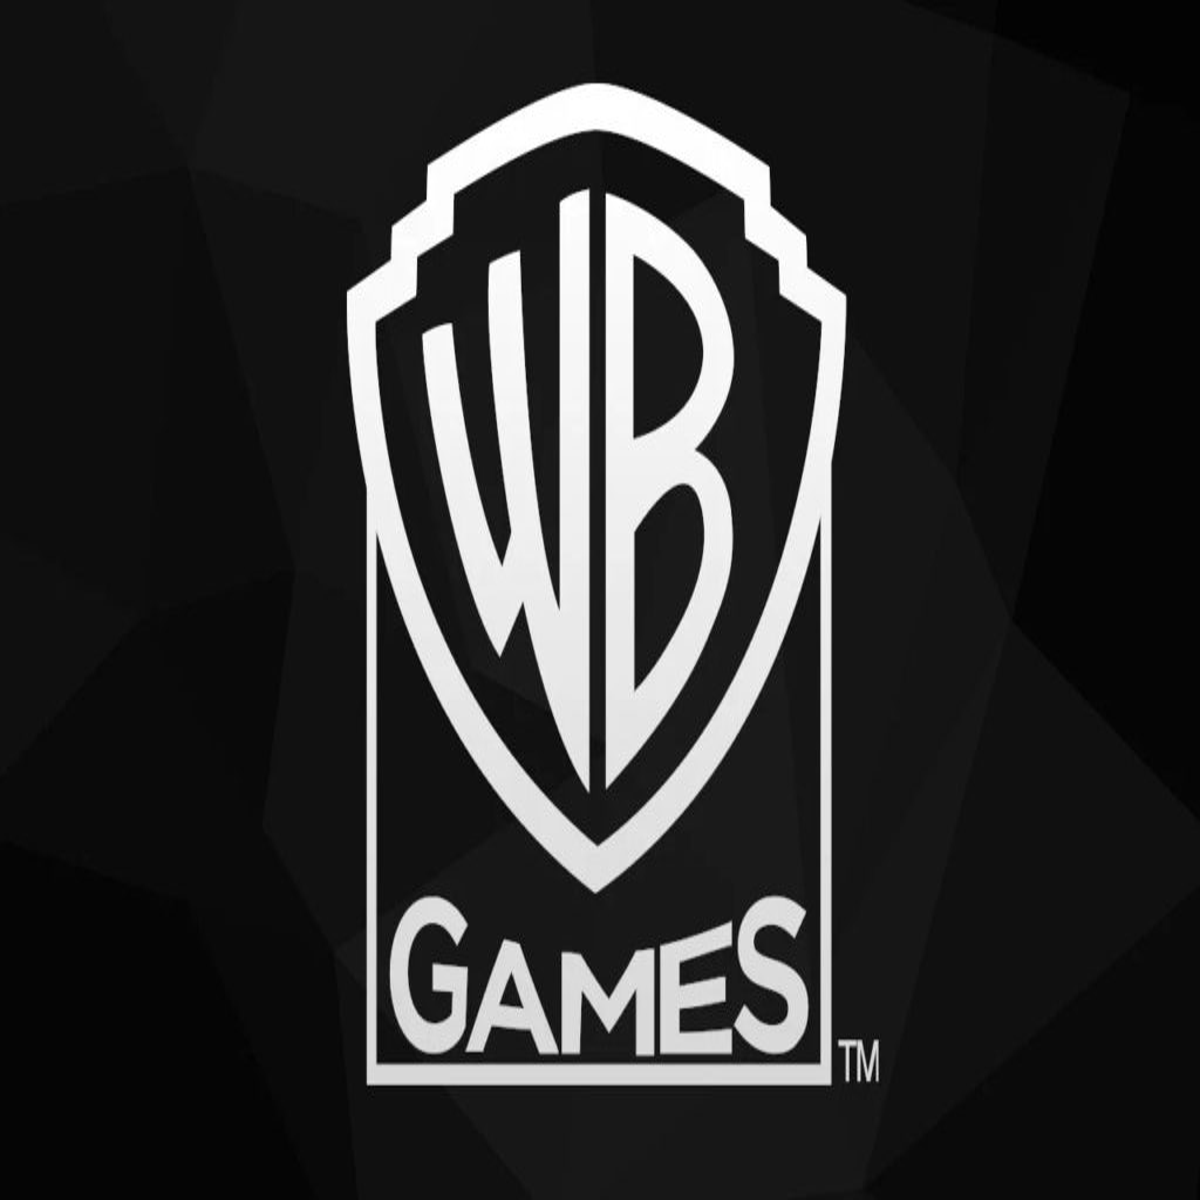 De acordo com relatório, Warner Bros. Discovery exigiu que a WB Games crie  mais jogos baseados